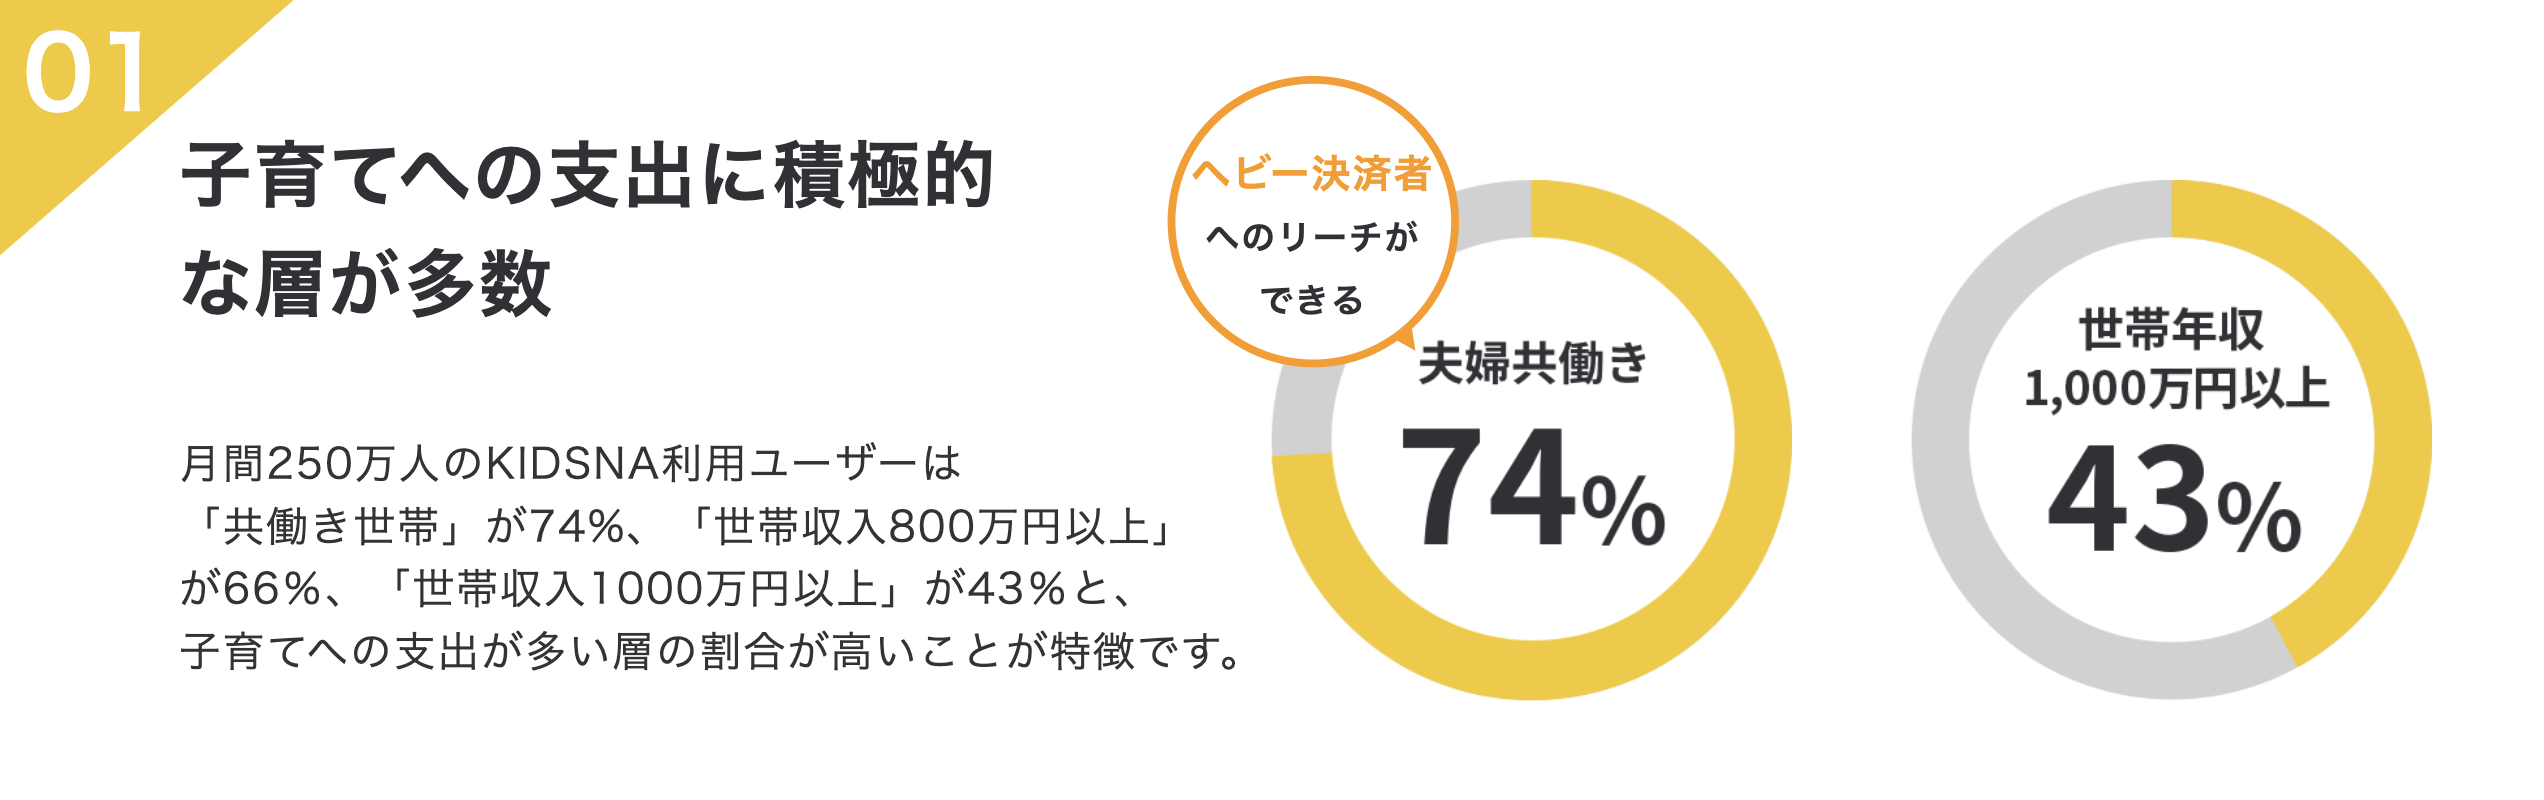 グラフ。ユーザーのうち夫婦共働きが74%、世帯年収1000万円以上が43%と、子育てへの支出に積極的なユーザーが多い。